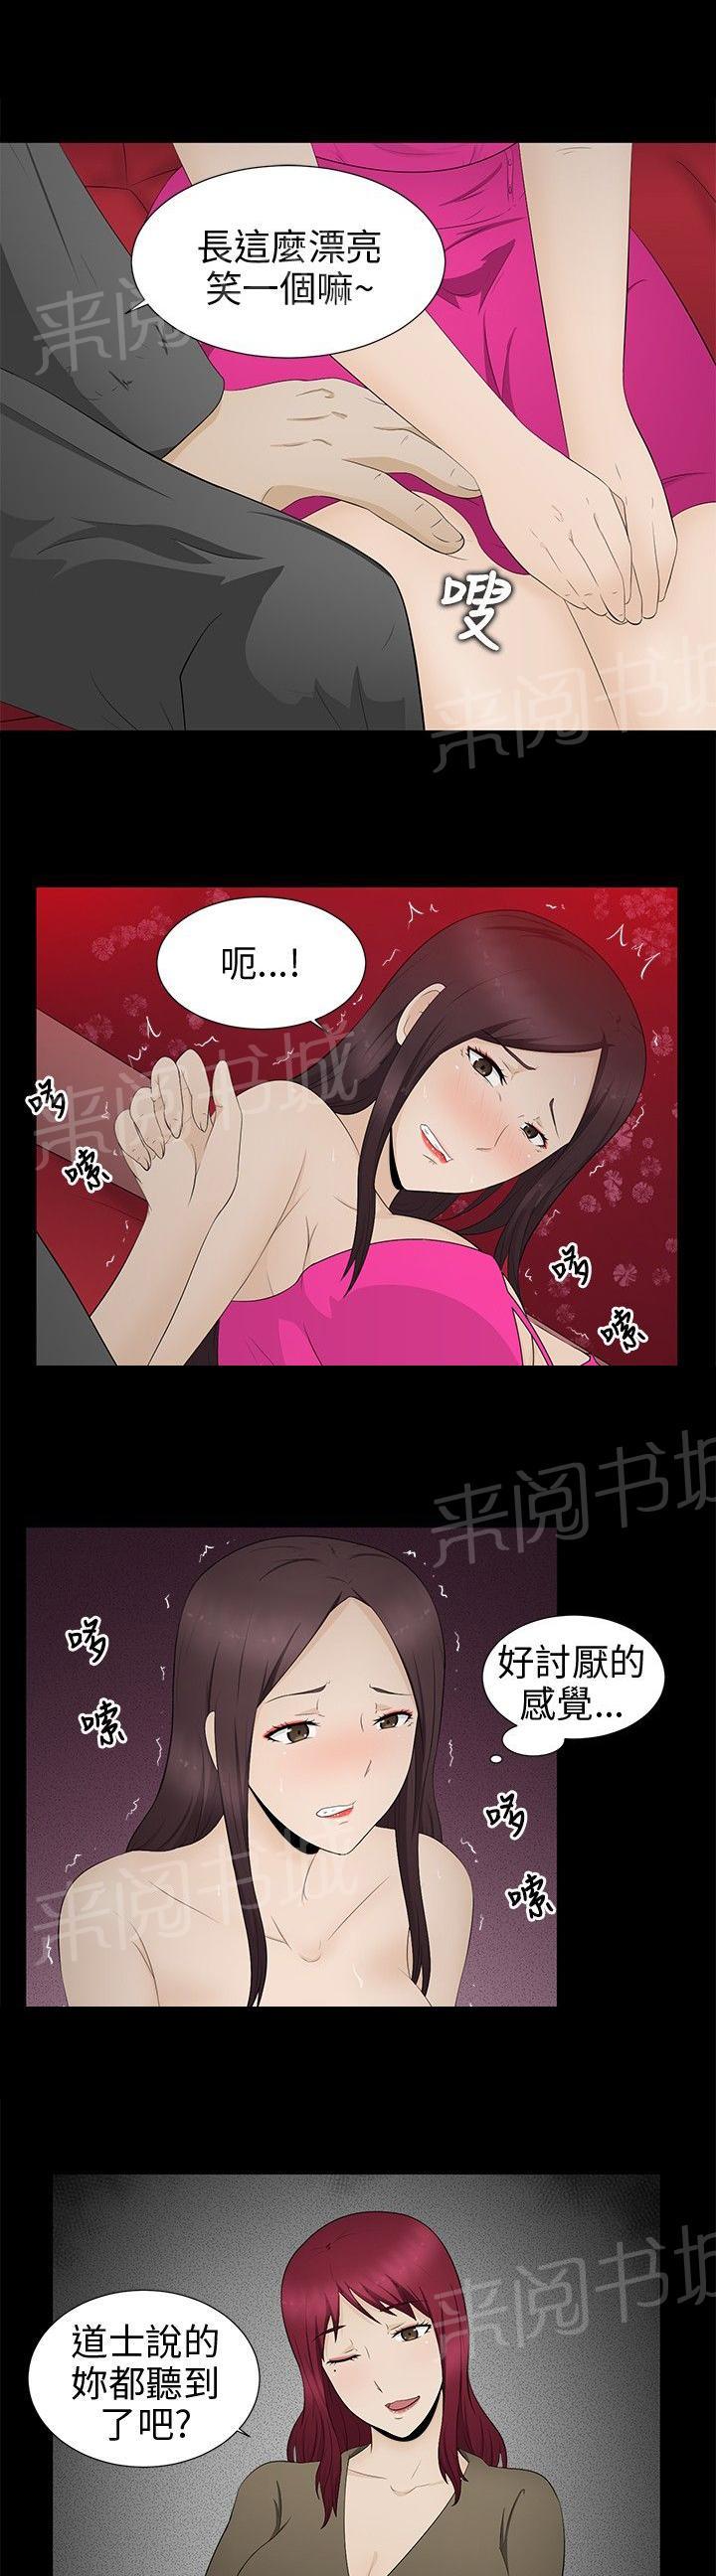 韩国污漫画 掙脫牢籠 第7话 20